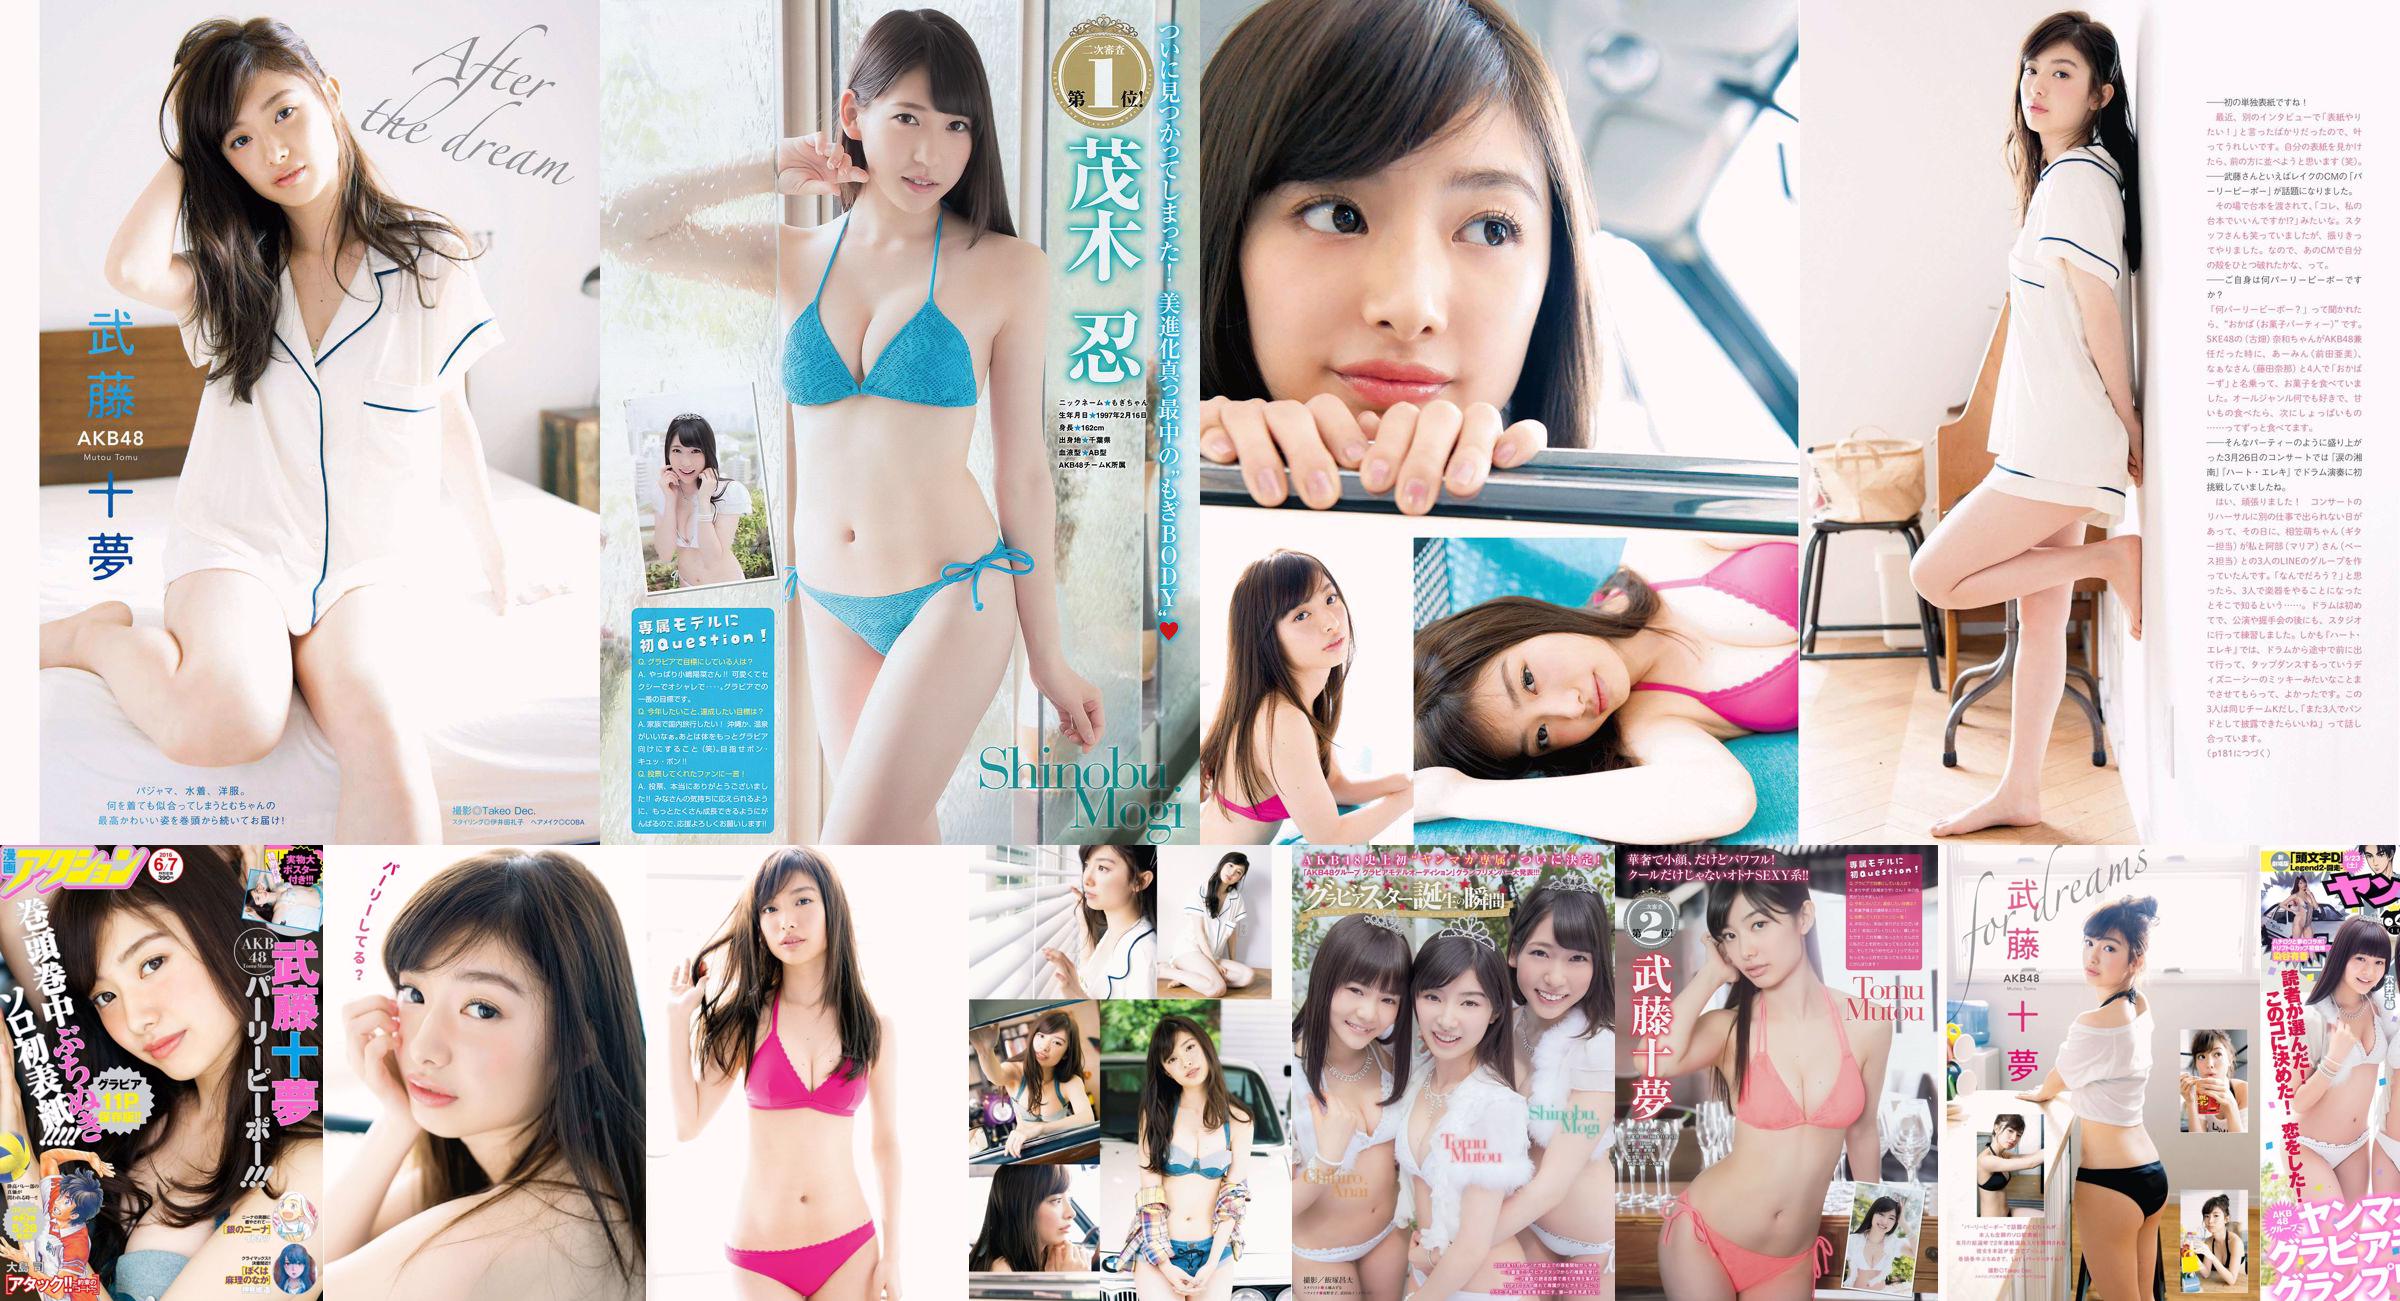 [Young Magazine] Tomu Muto Shinobu Mogi Chihiro Anai Erina Mano Yuka Someya 2015 No.25 Fotografia No.8bd2a0 Pagina 3